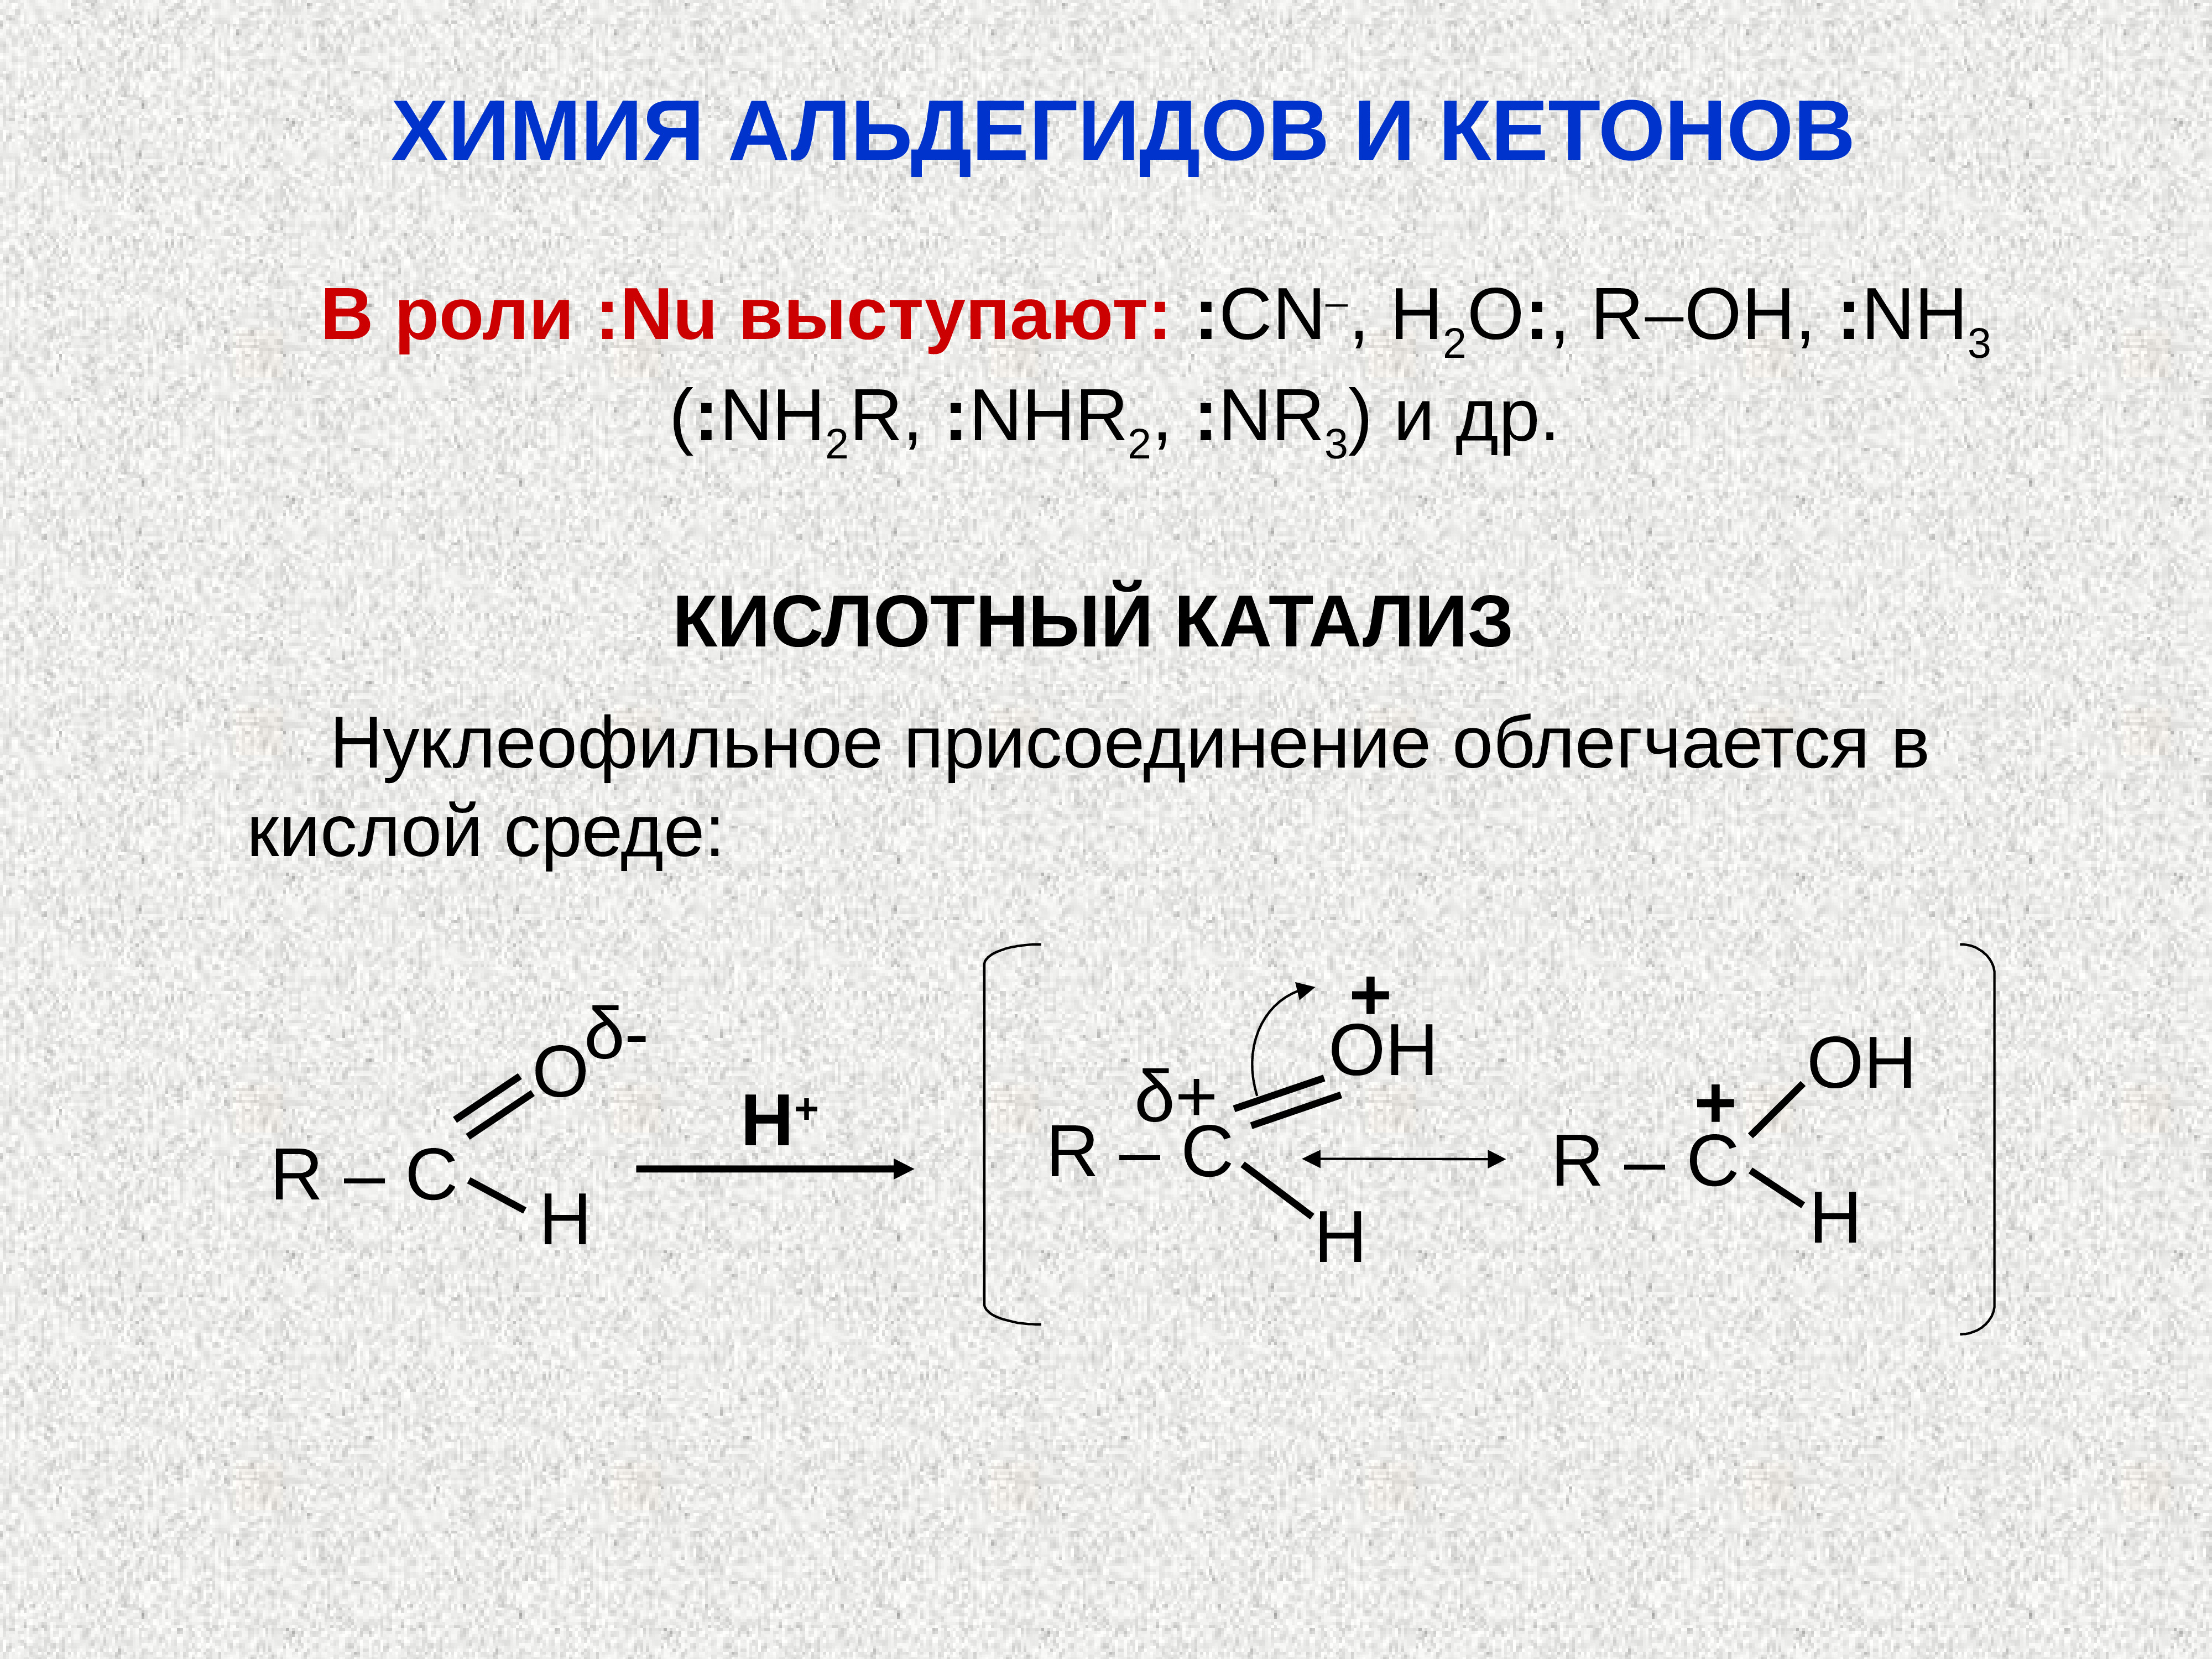 Альдегид с водой реакция. Щелочной катализ альдегида. Кислотный катализ альдегидов. Основный катализ альдегидов и кетонов. Роль кислотного катализа альдегидов и кетонов.